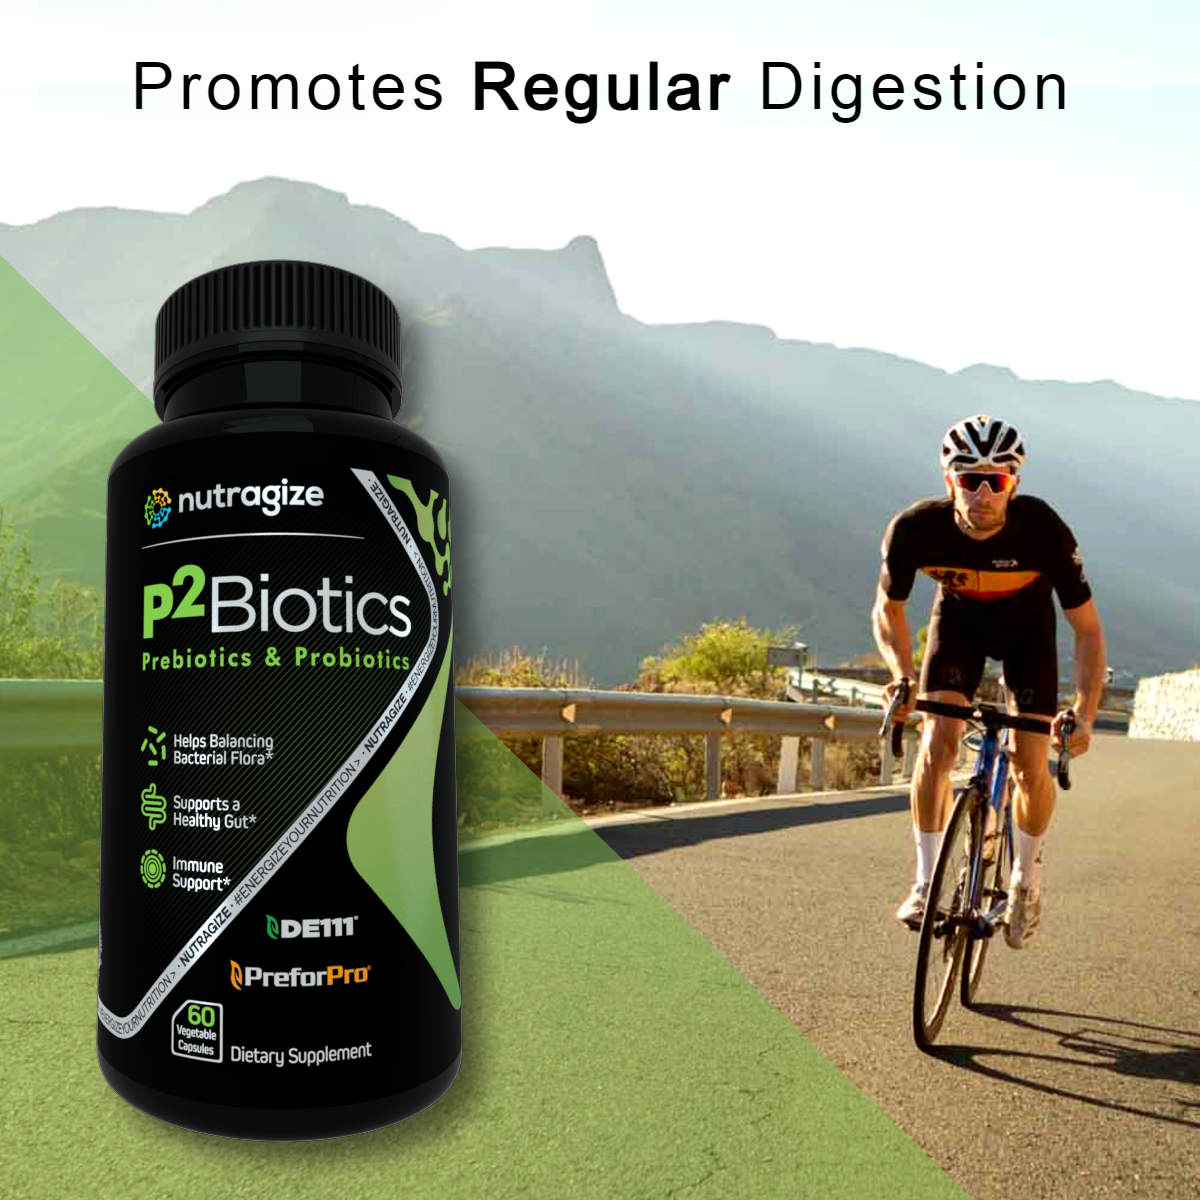 P2Biotics Promotes Regular Digestion*